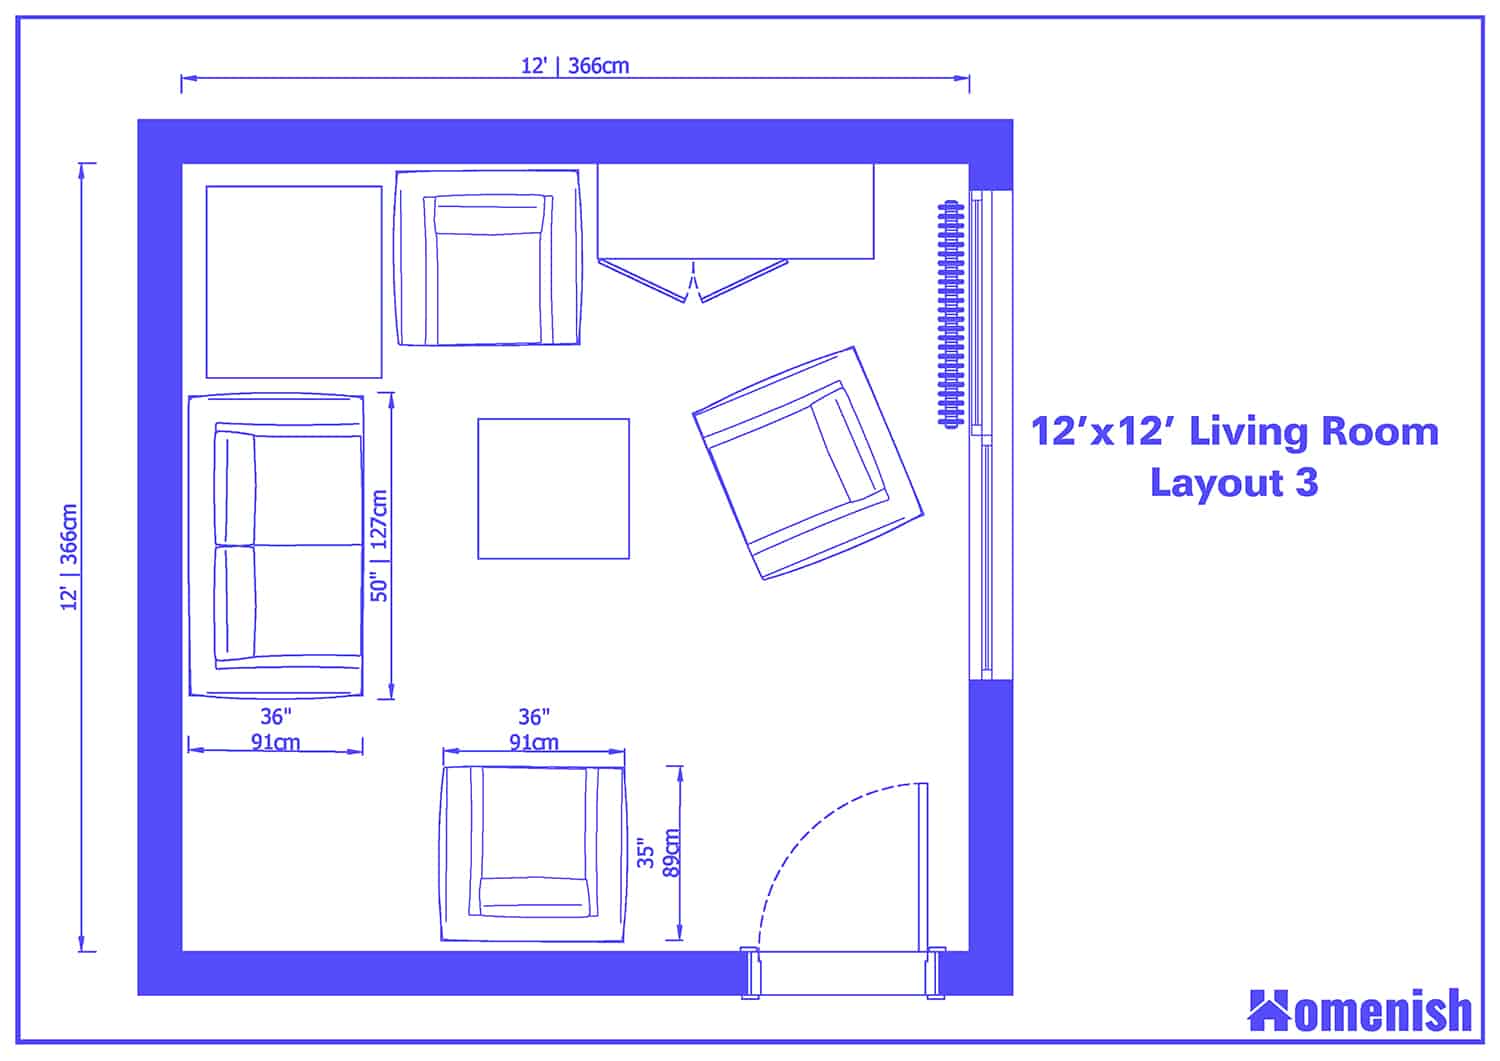 Living Room Alcove To Bedrooms Floor Plan